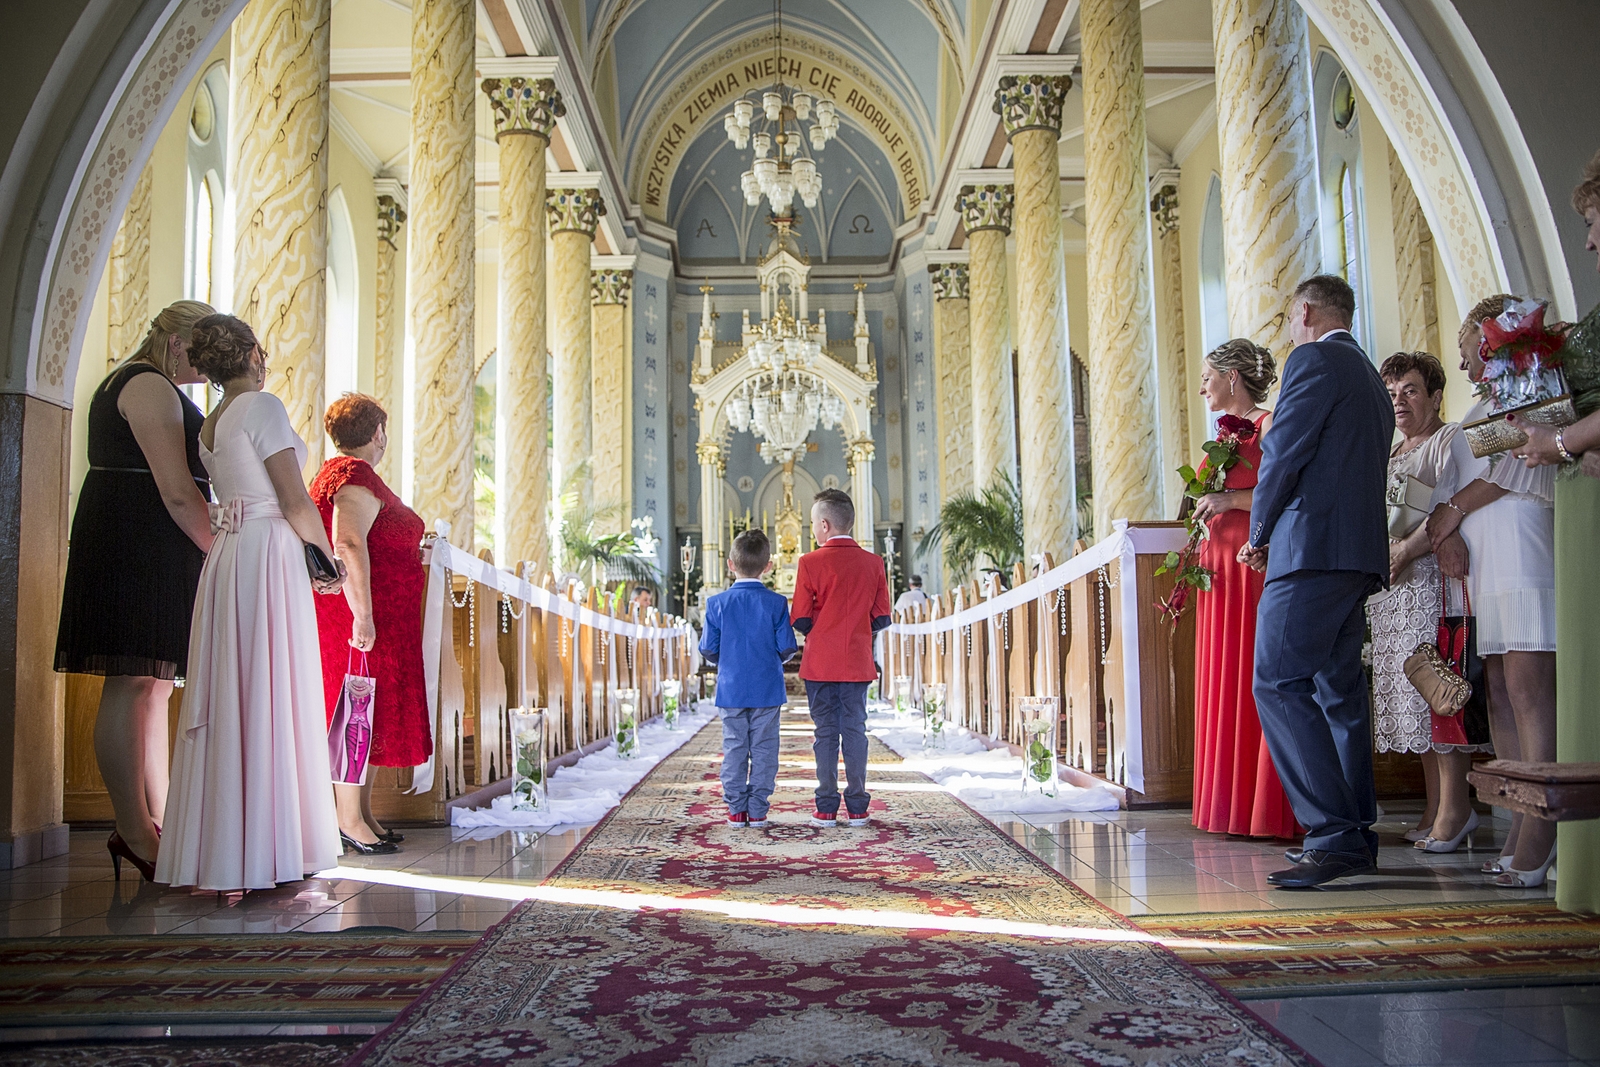 Ślub kościelny na profesjonalnej sesji fotograficznej w warszawskim kościele podczas ślubu.